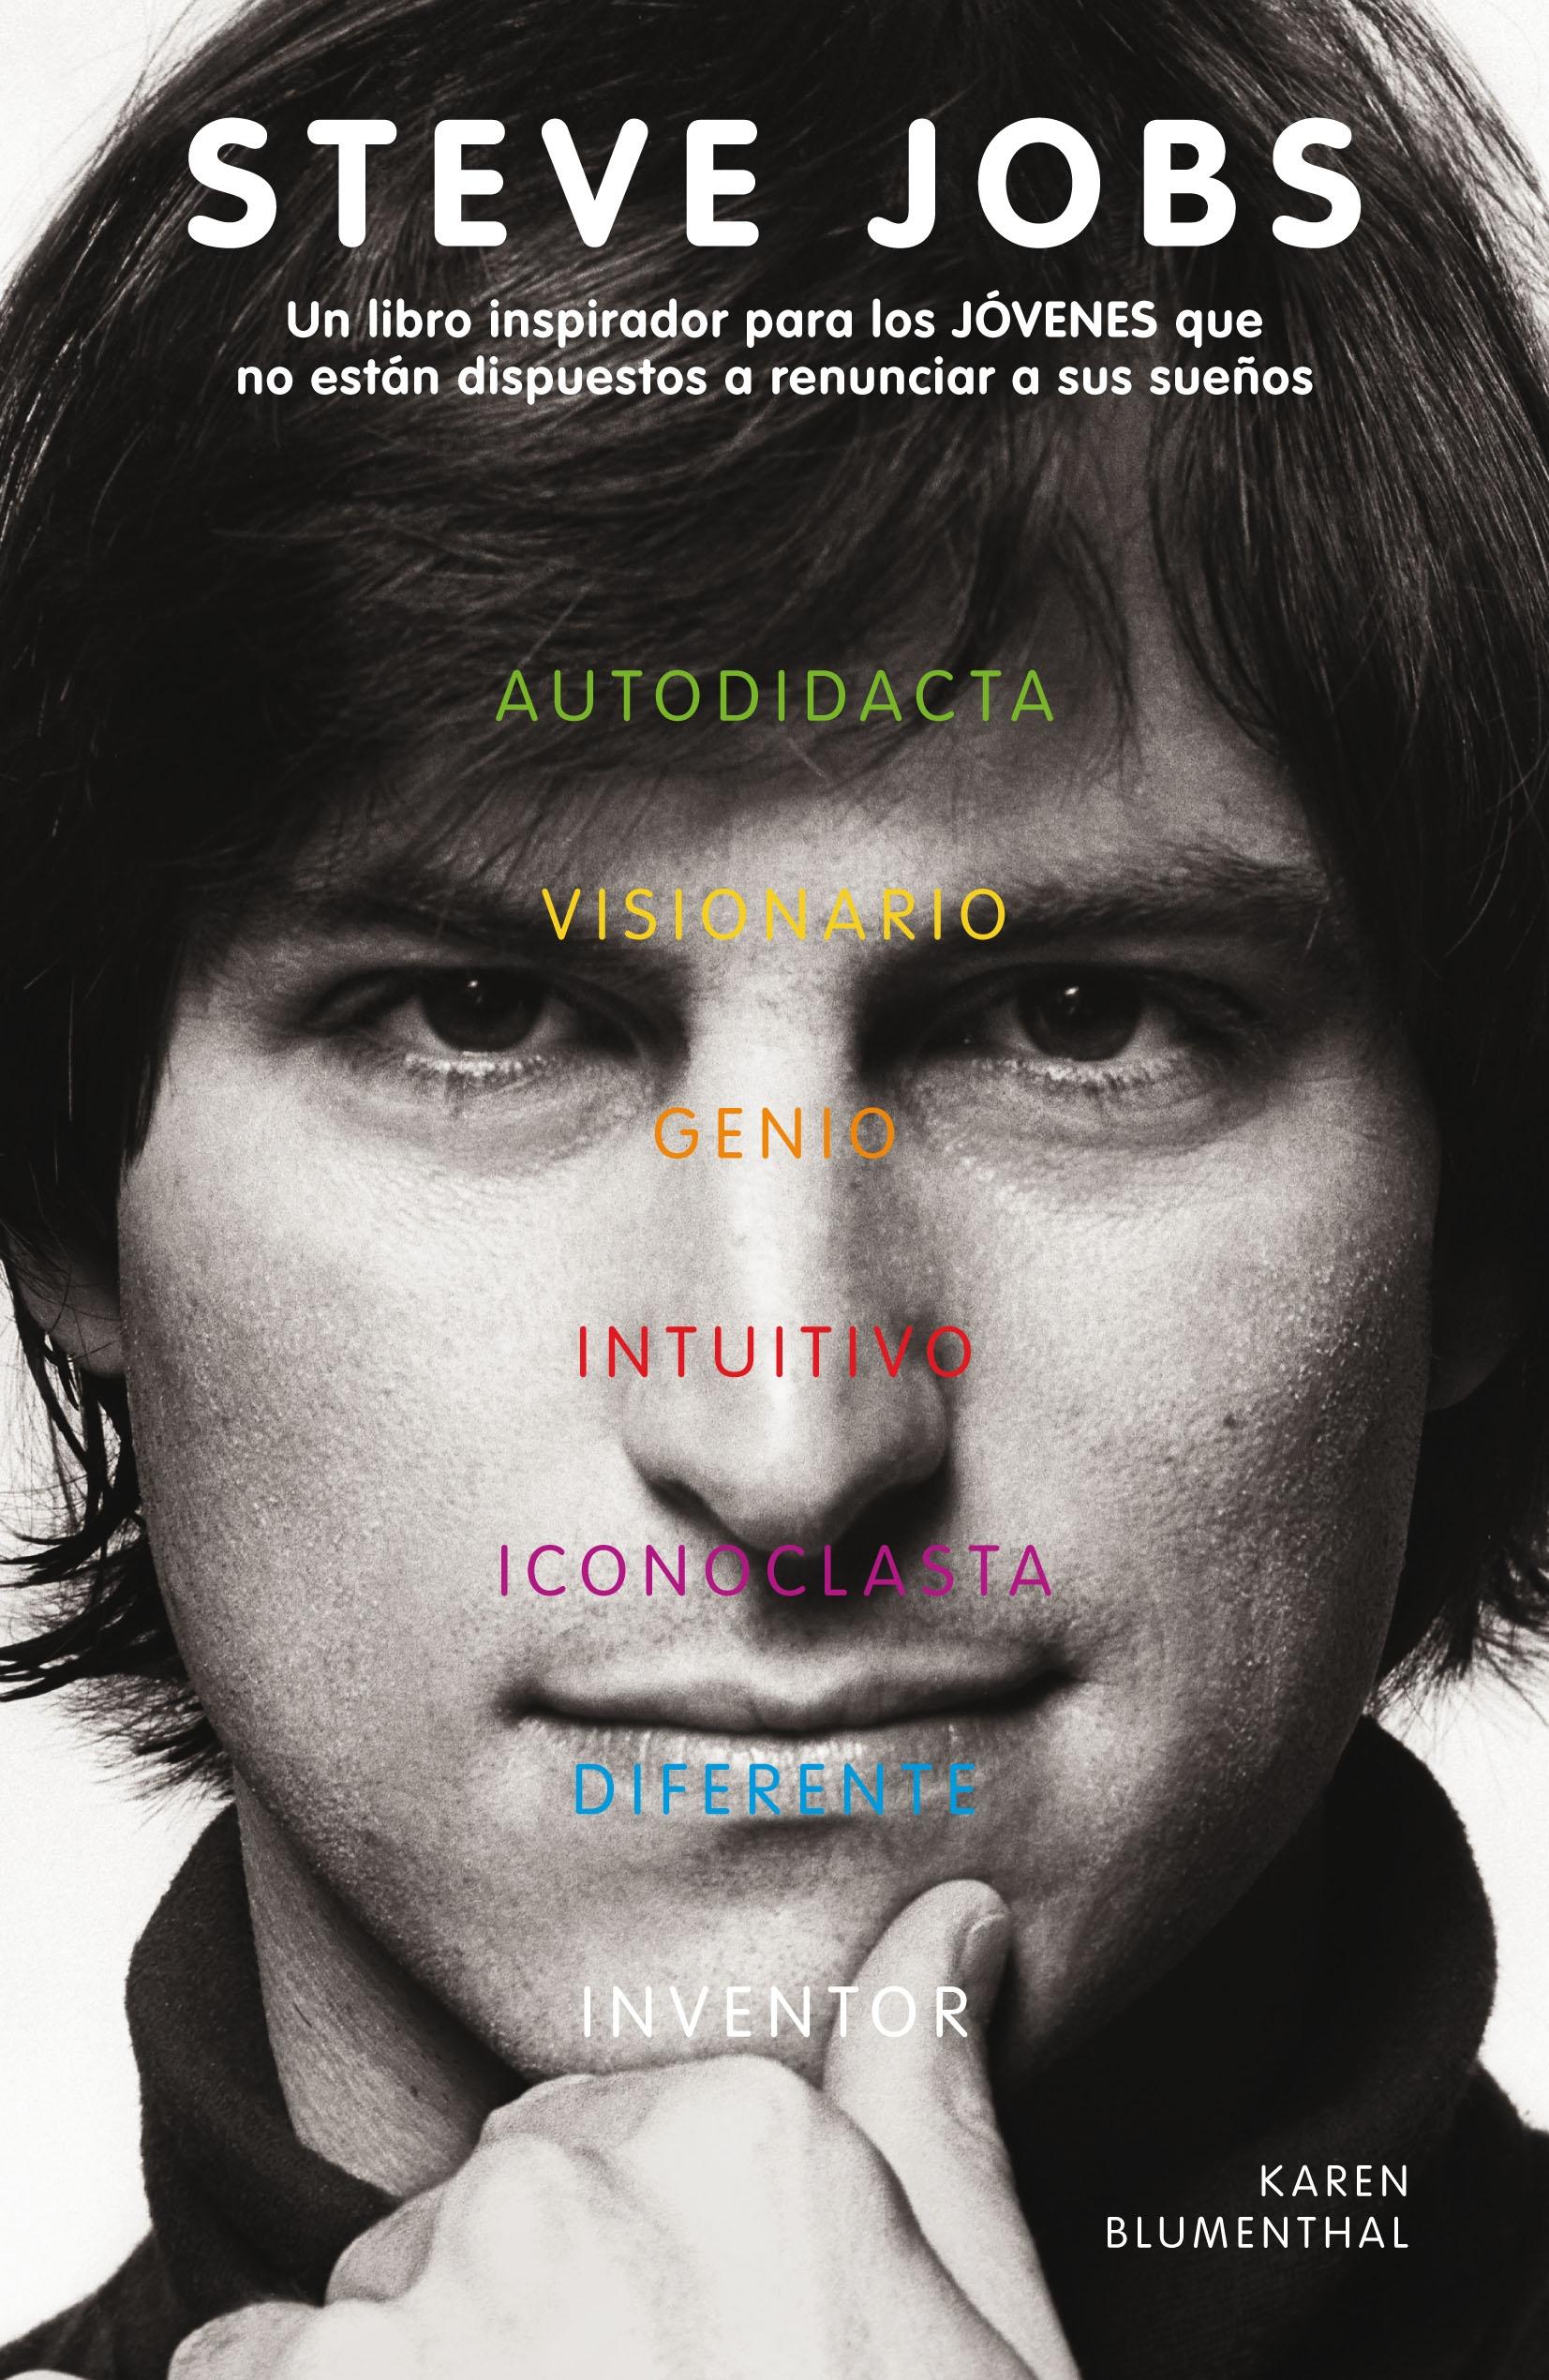 Steve Jobs "Un libro inspirador para los jóvenes que no están dispuestos a renunciar a sus sueños". 